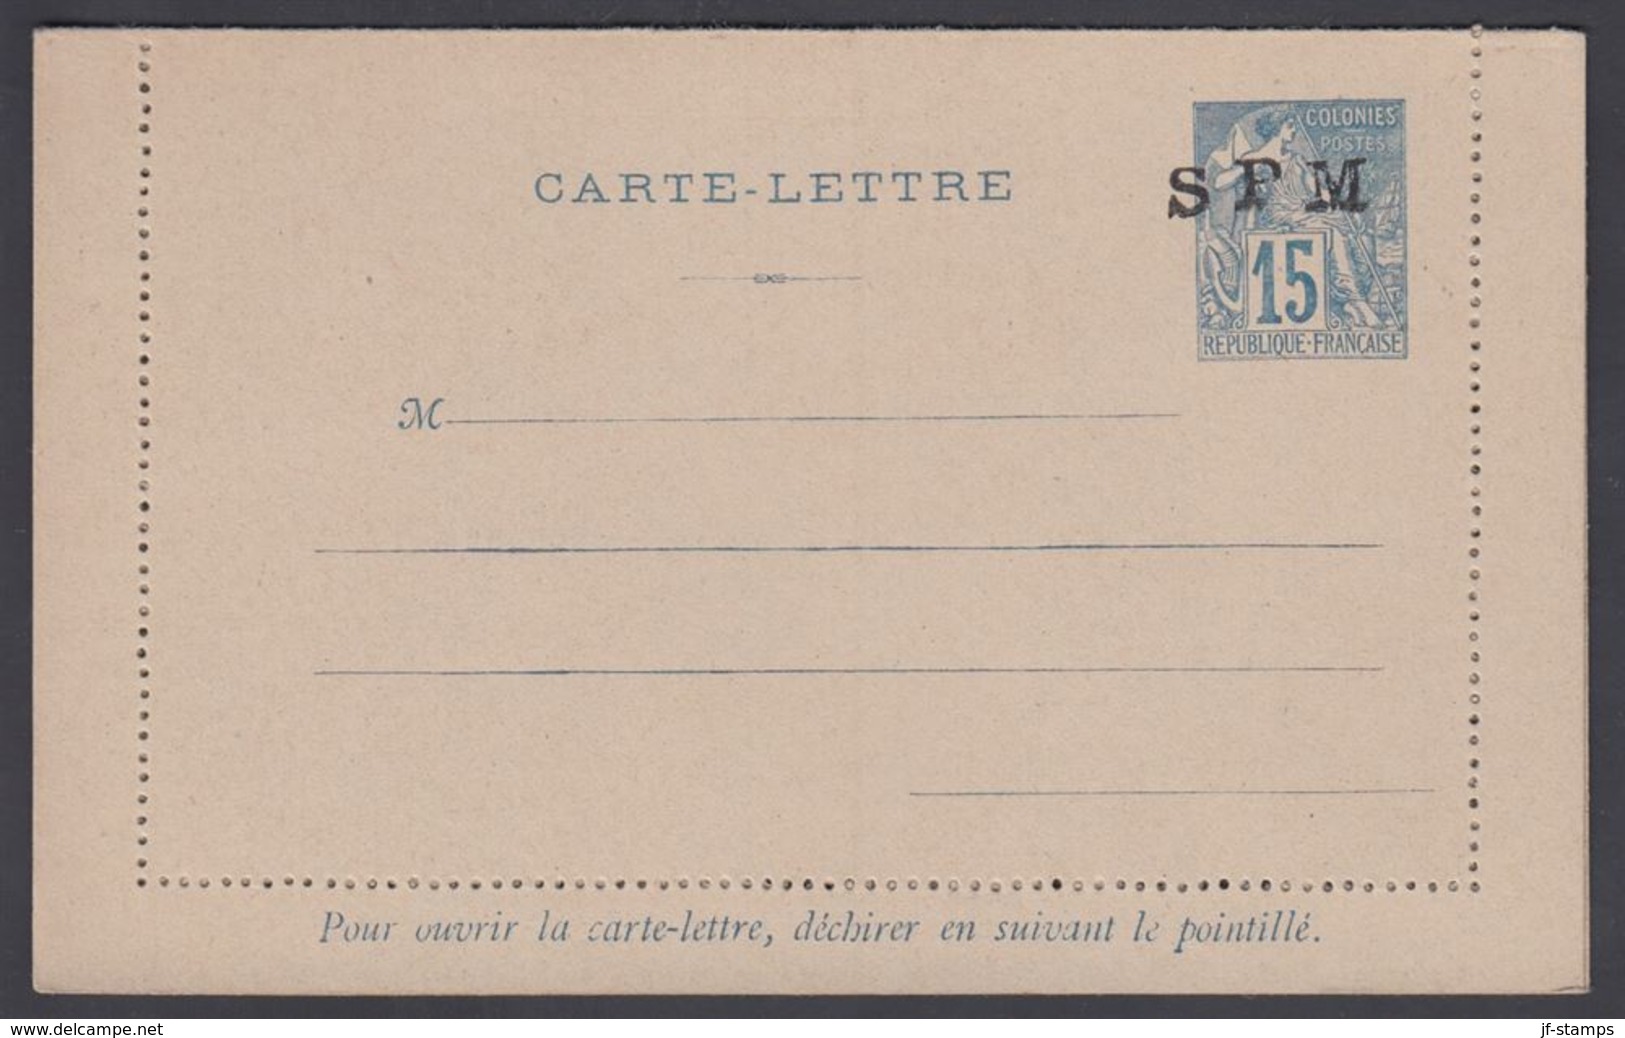 1892. SAINT-PIERRE-MIQUELON. CARTE -LETTRE SPM / 15 C. COLONIES POSTES REP. FRANCAISE... () - JF321815 - Lettres & Documents